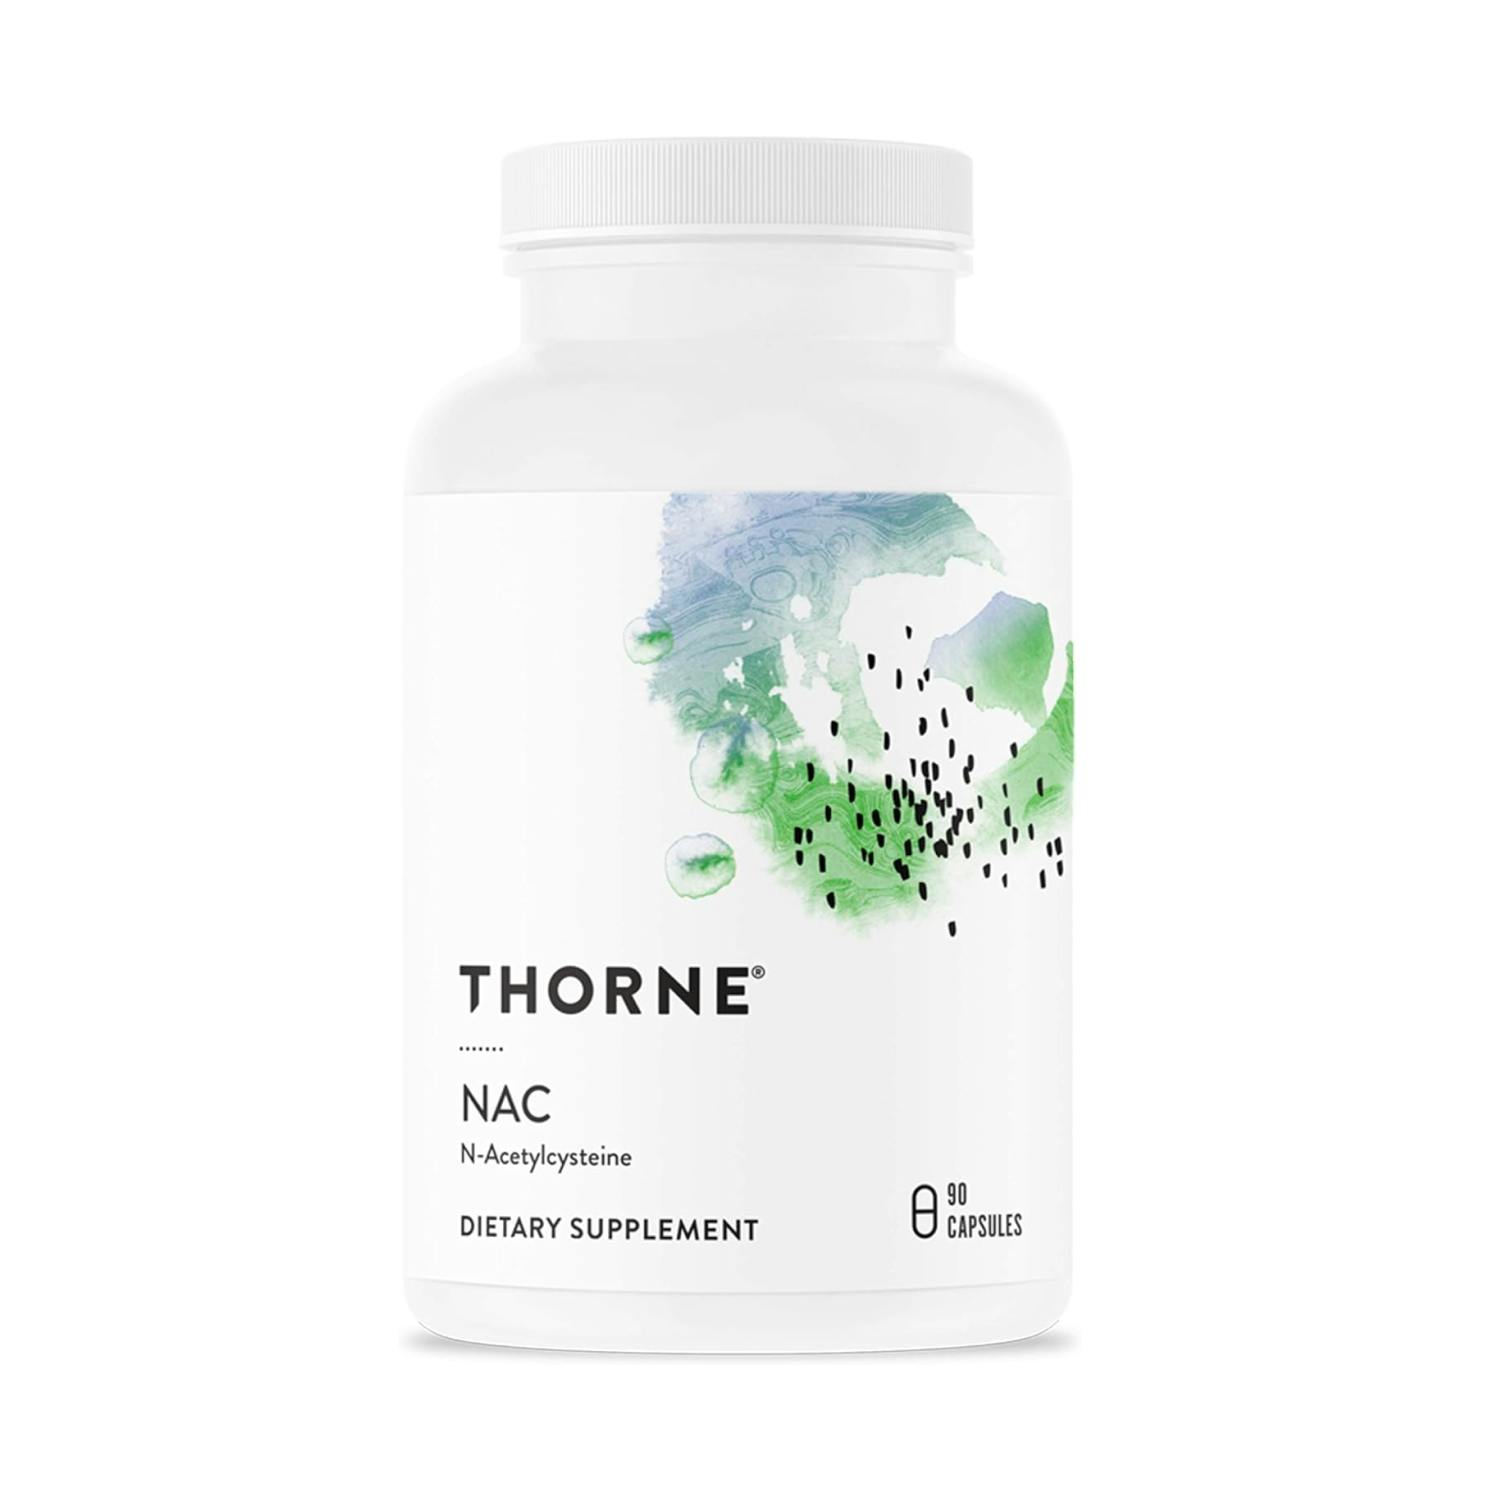 THORNE NAC - N-Acetylcysteine